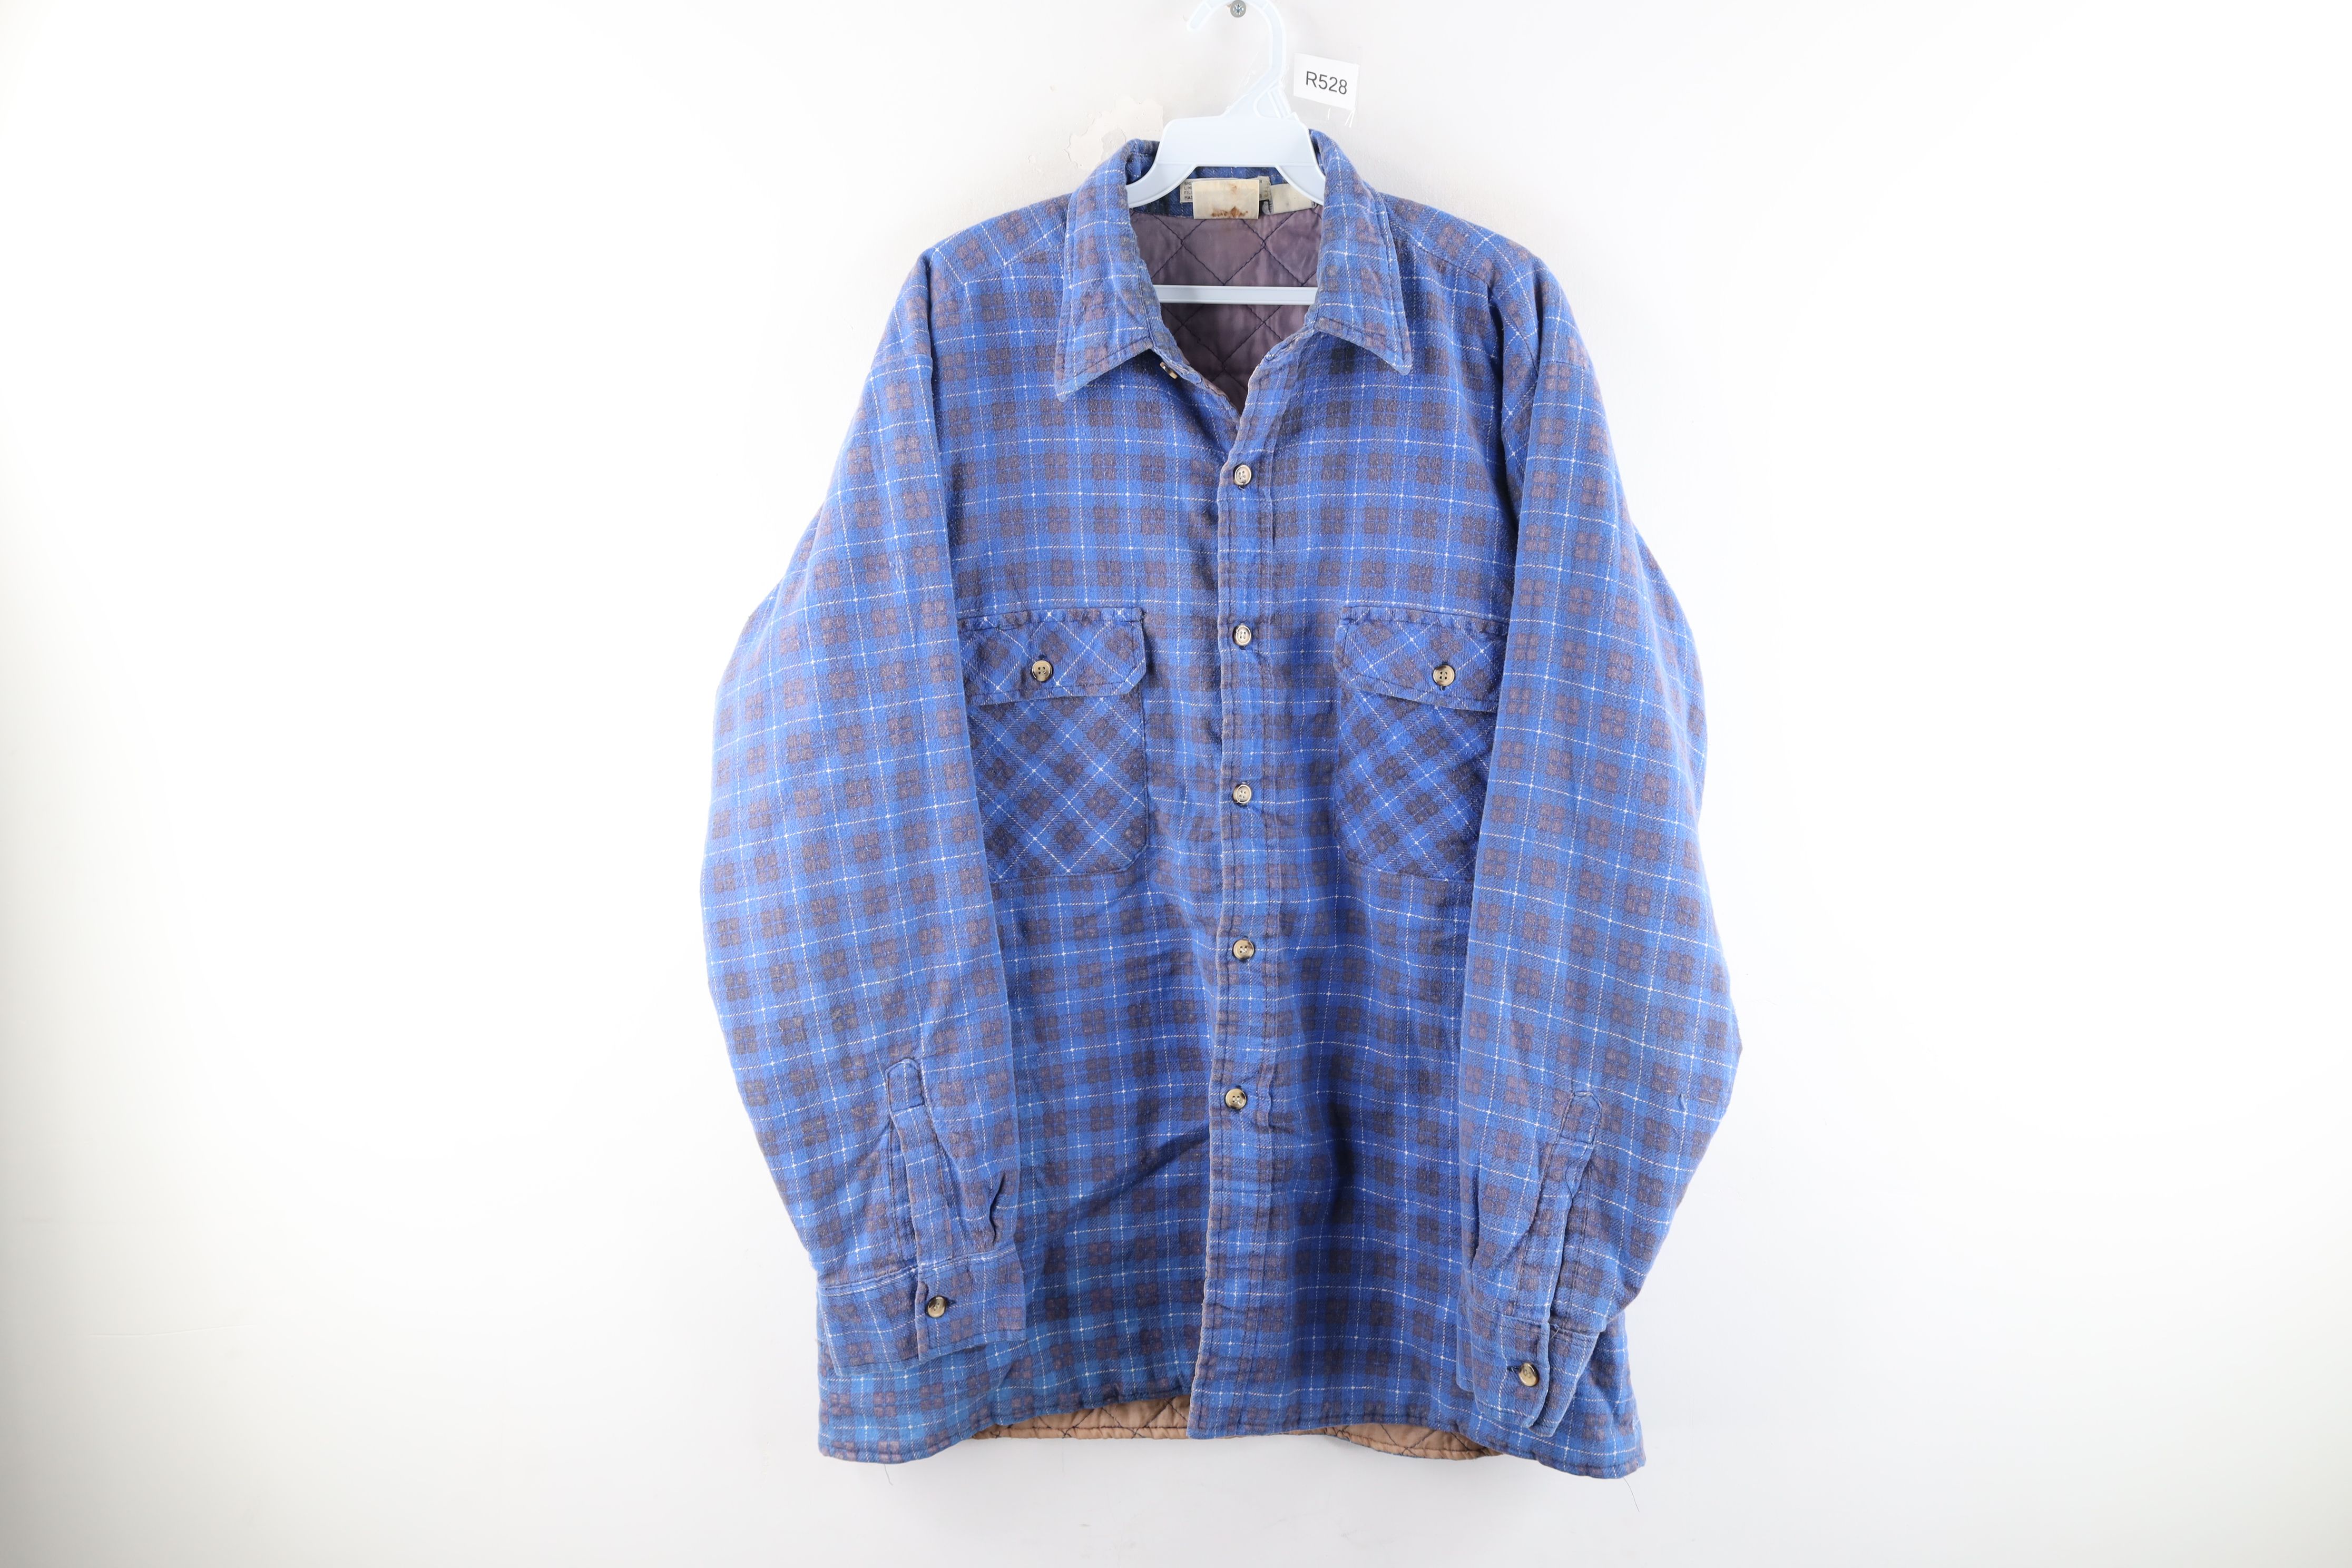 Vintage Vintage 80s Lee Thrashed Double Pocket Flannel Shirt Jacket Size US L / EU 52-54 / 3 - 1 Preview